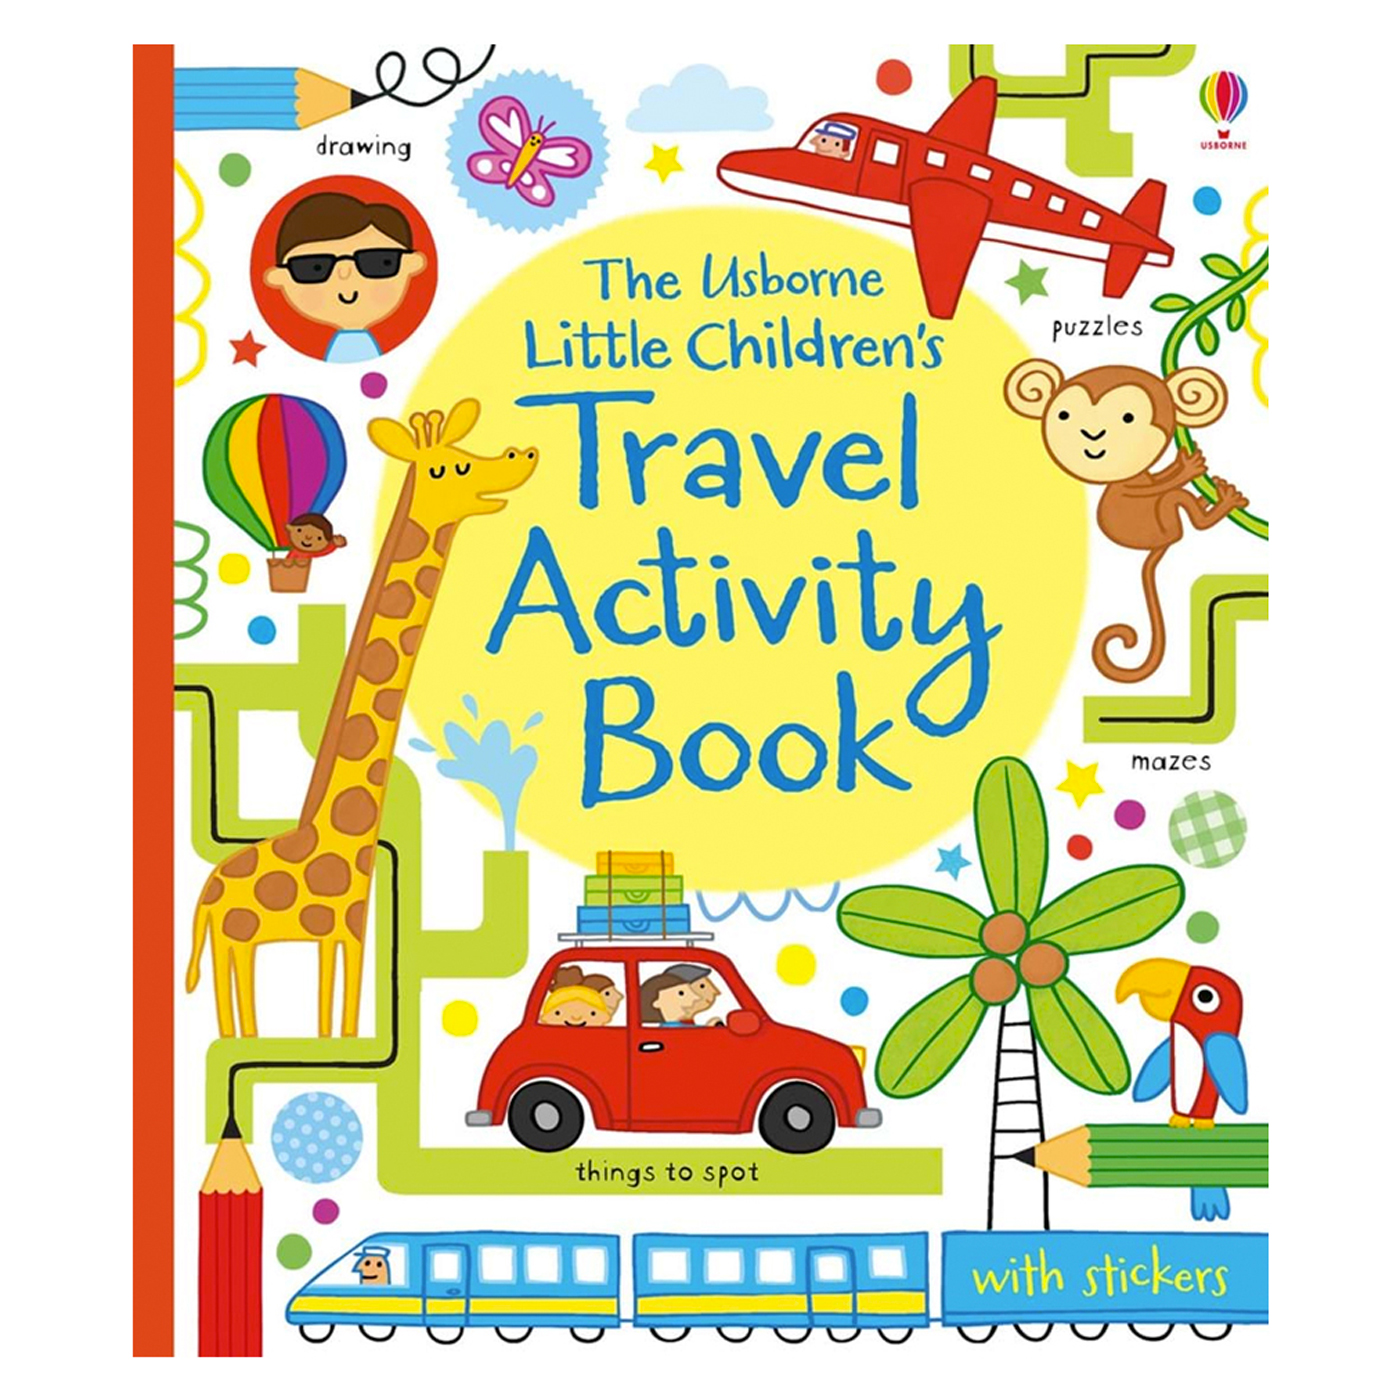  Little Children's Travel Activity Book